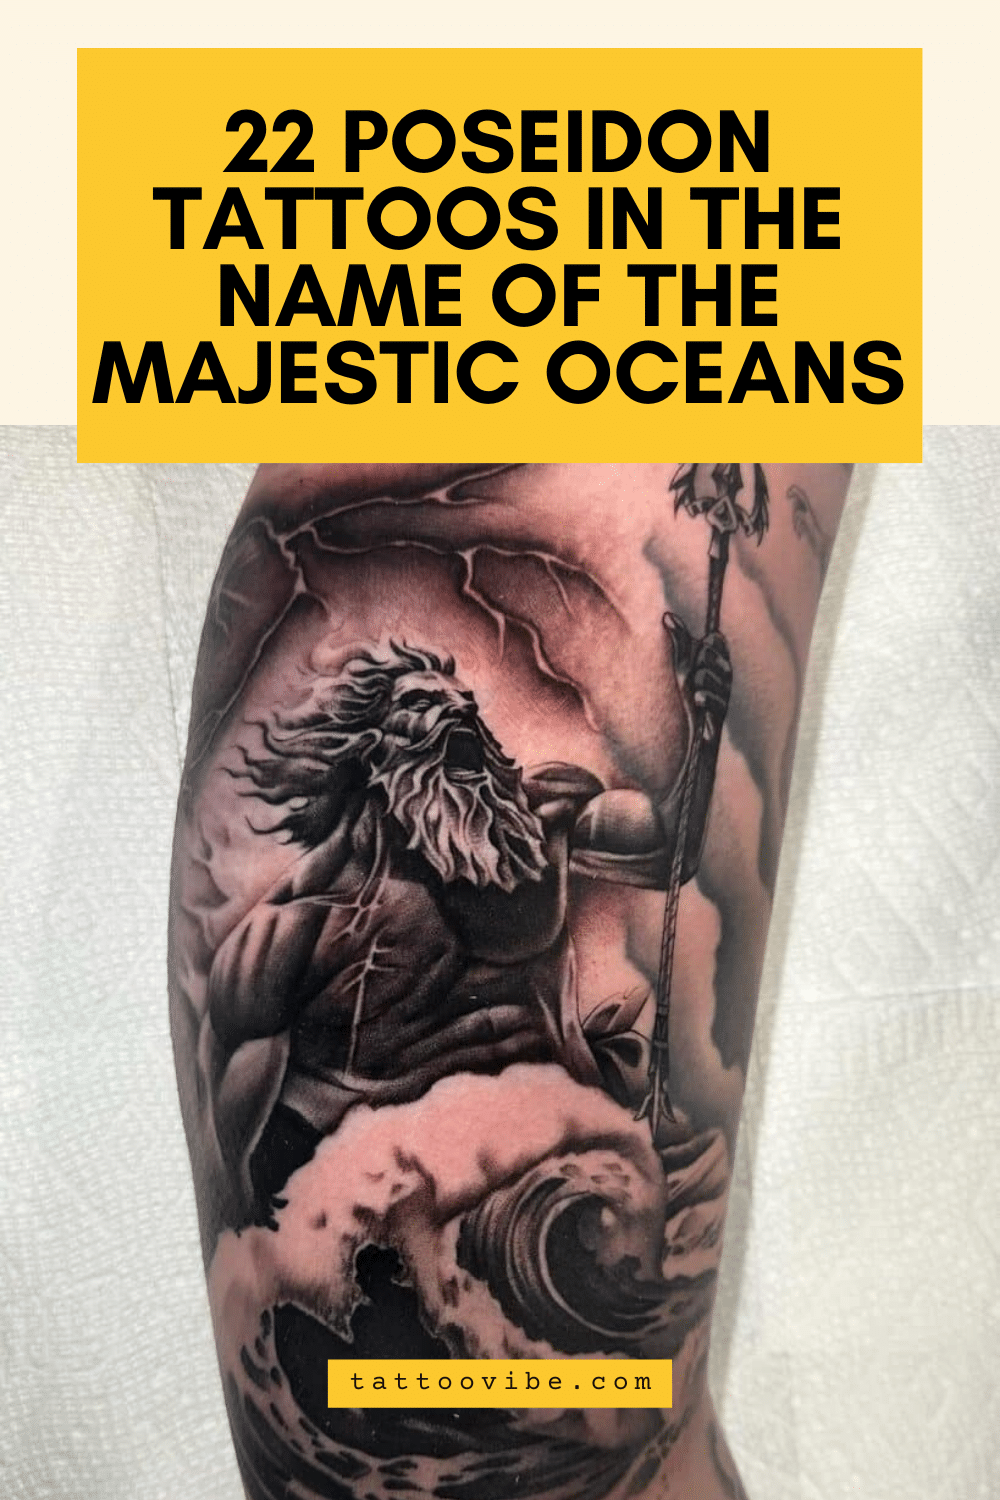 22 Tatuagens de Poseidon em nome dos oceanos majestosos